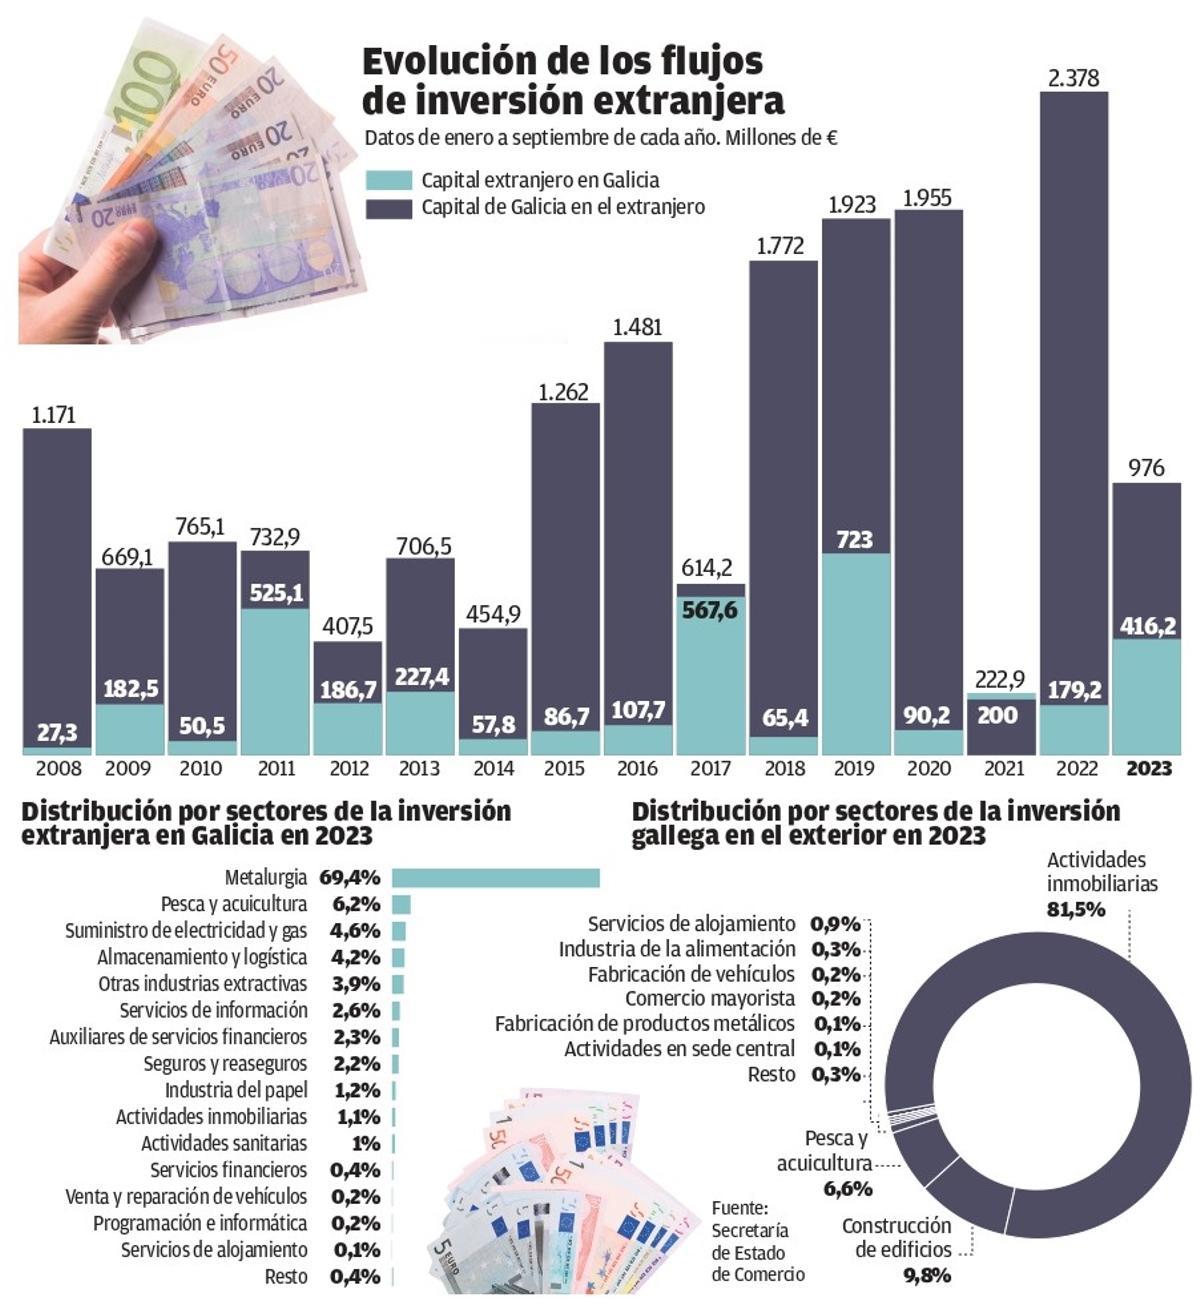 Inversiones extranjeras en Galicia en 2023